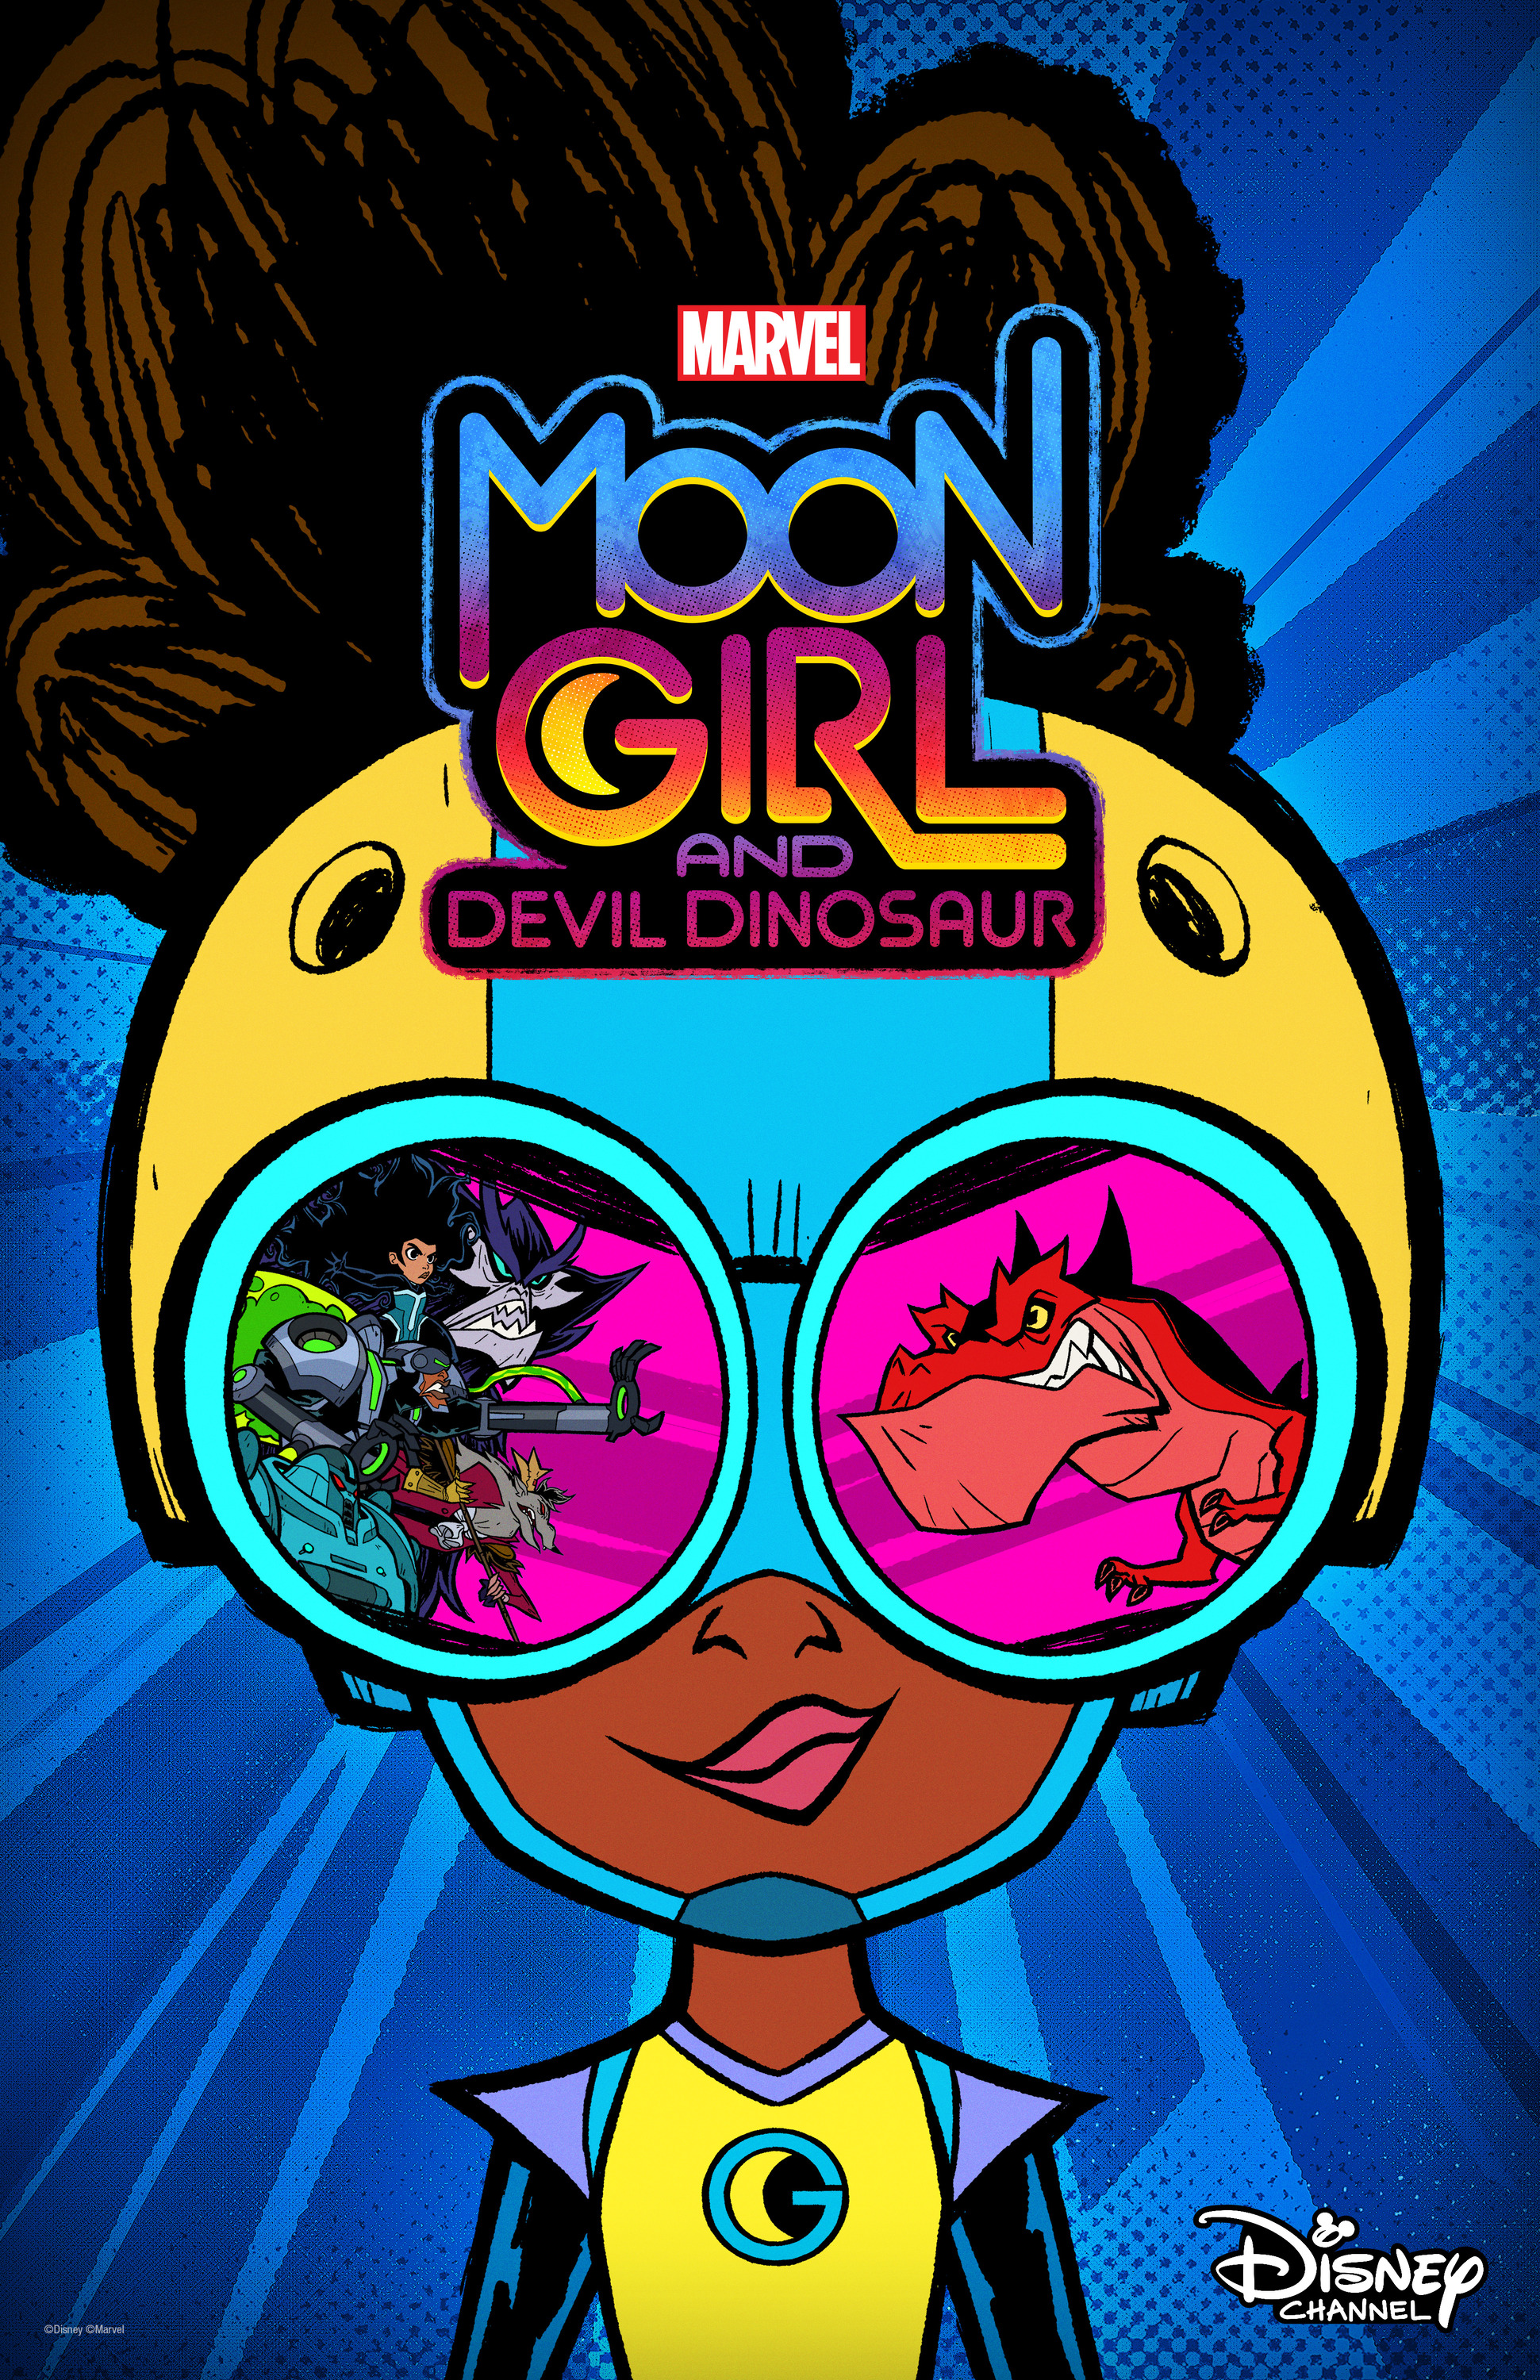 Mega Sized Movie Poster Image for Marvel's Moon Girl and Devil Dinosaur 